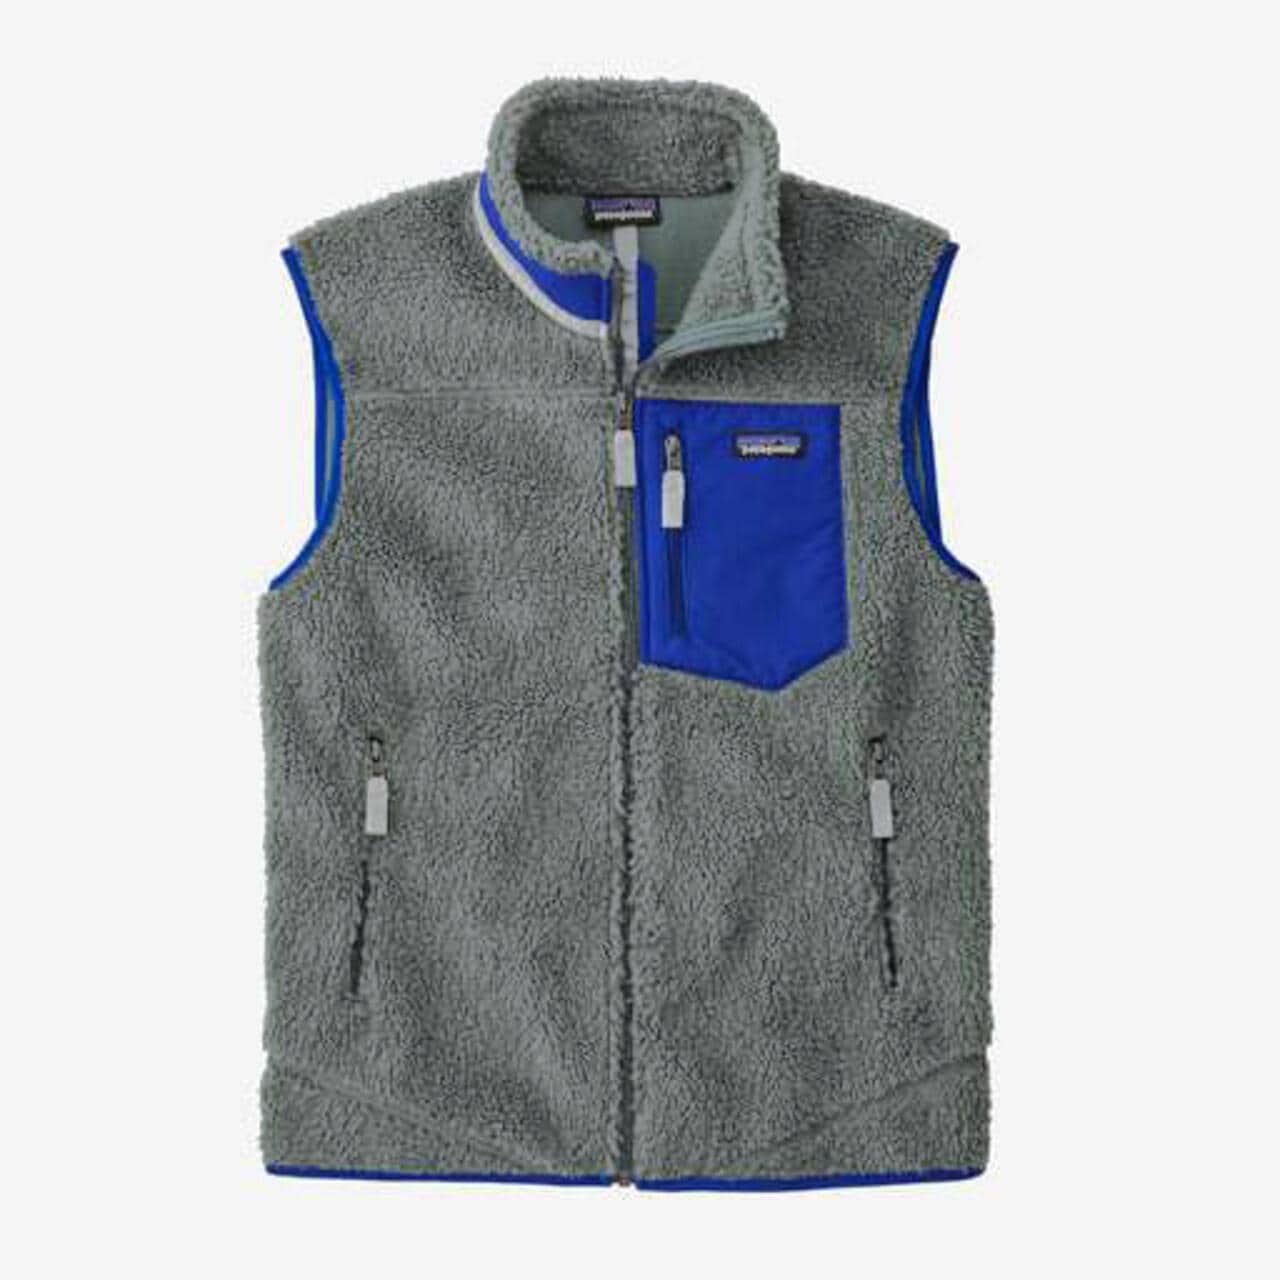 【新品未使用】 パタゴニア patagonia メンズ クラシックレトロXベスト フリース Mens Classic Retro-X Vest 23048 【Lサイズ/PITCH BLUE】